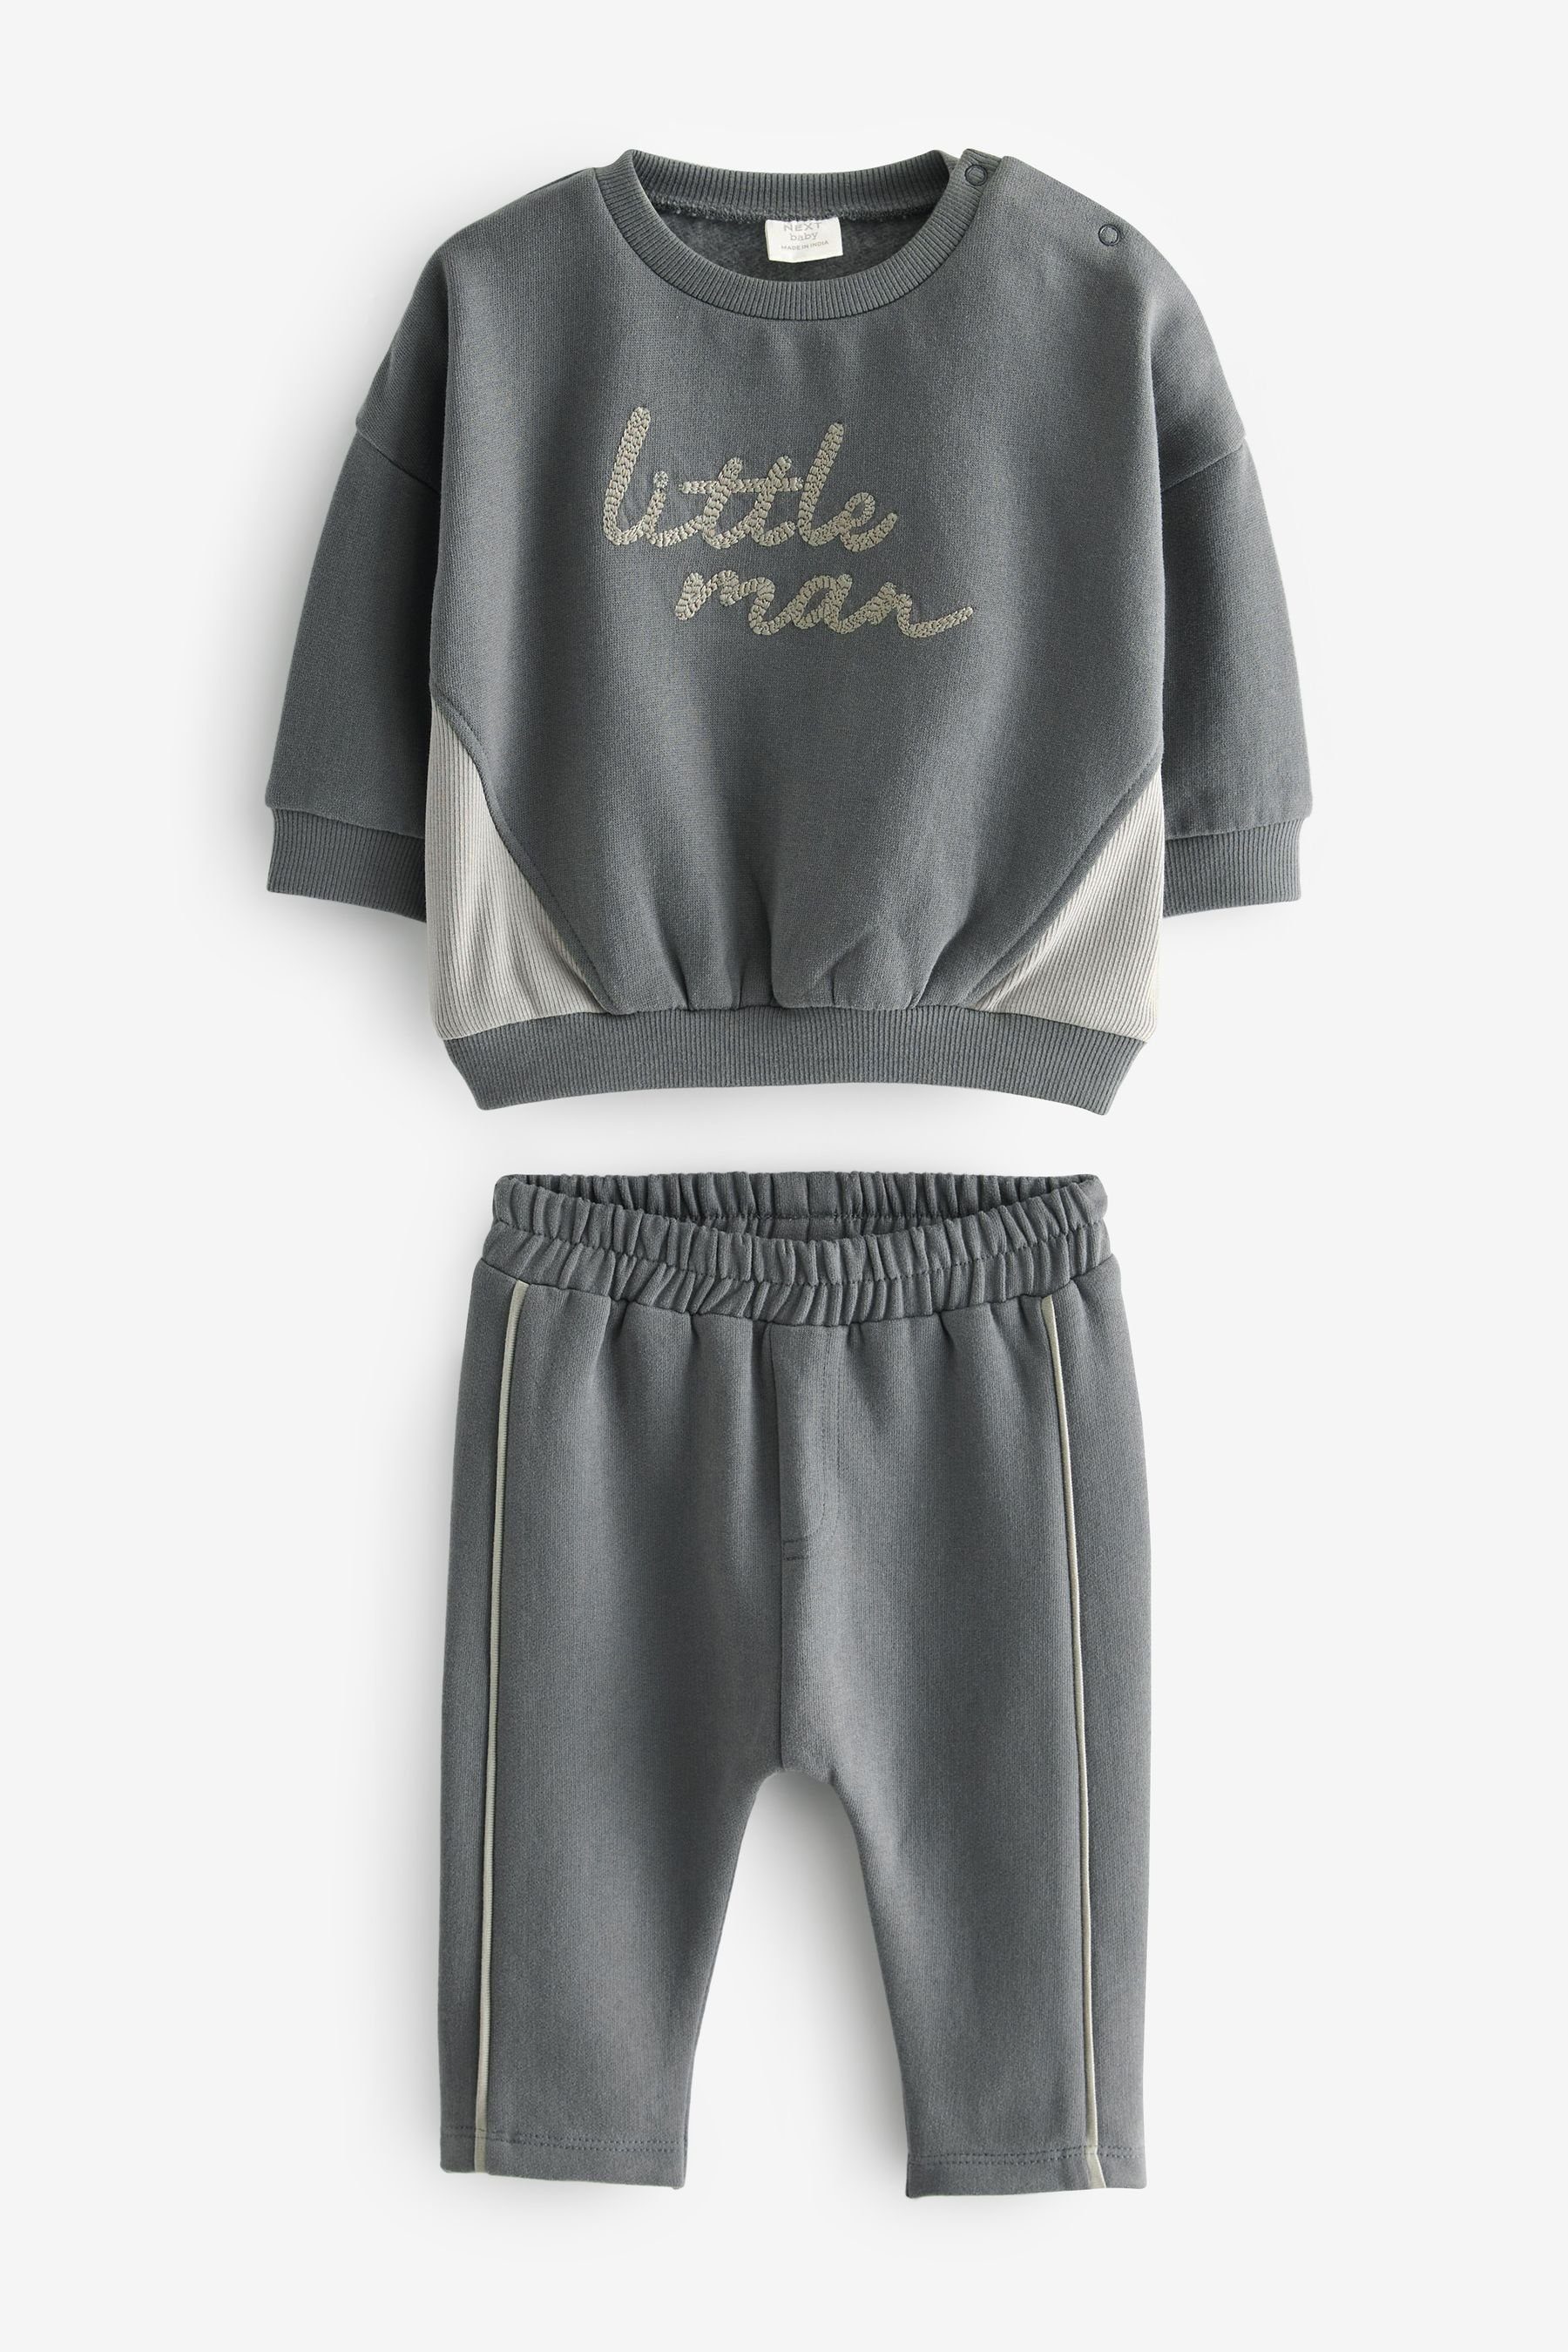 Next Sweatanzug 2-teiliges Baby-Set mit Sweatshirt und Jogginghose (2-tlg) Charcoal Grey Little Man